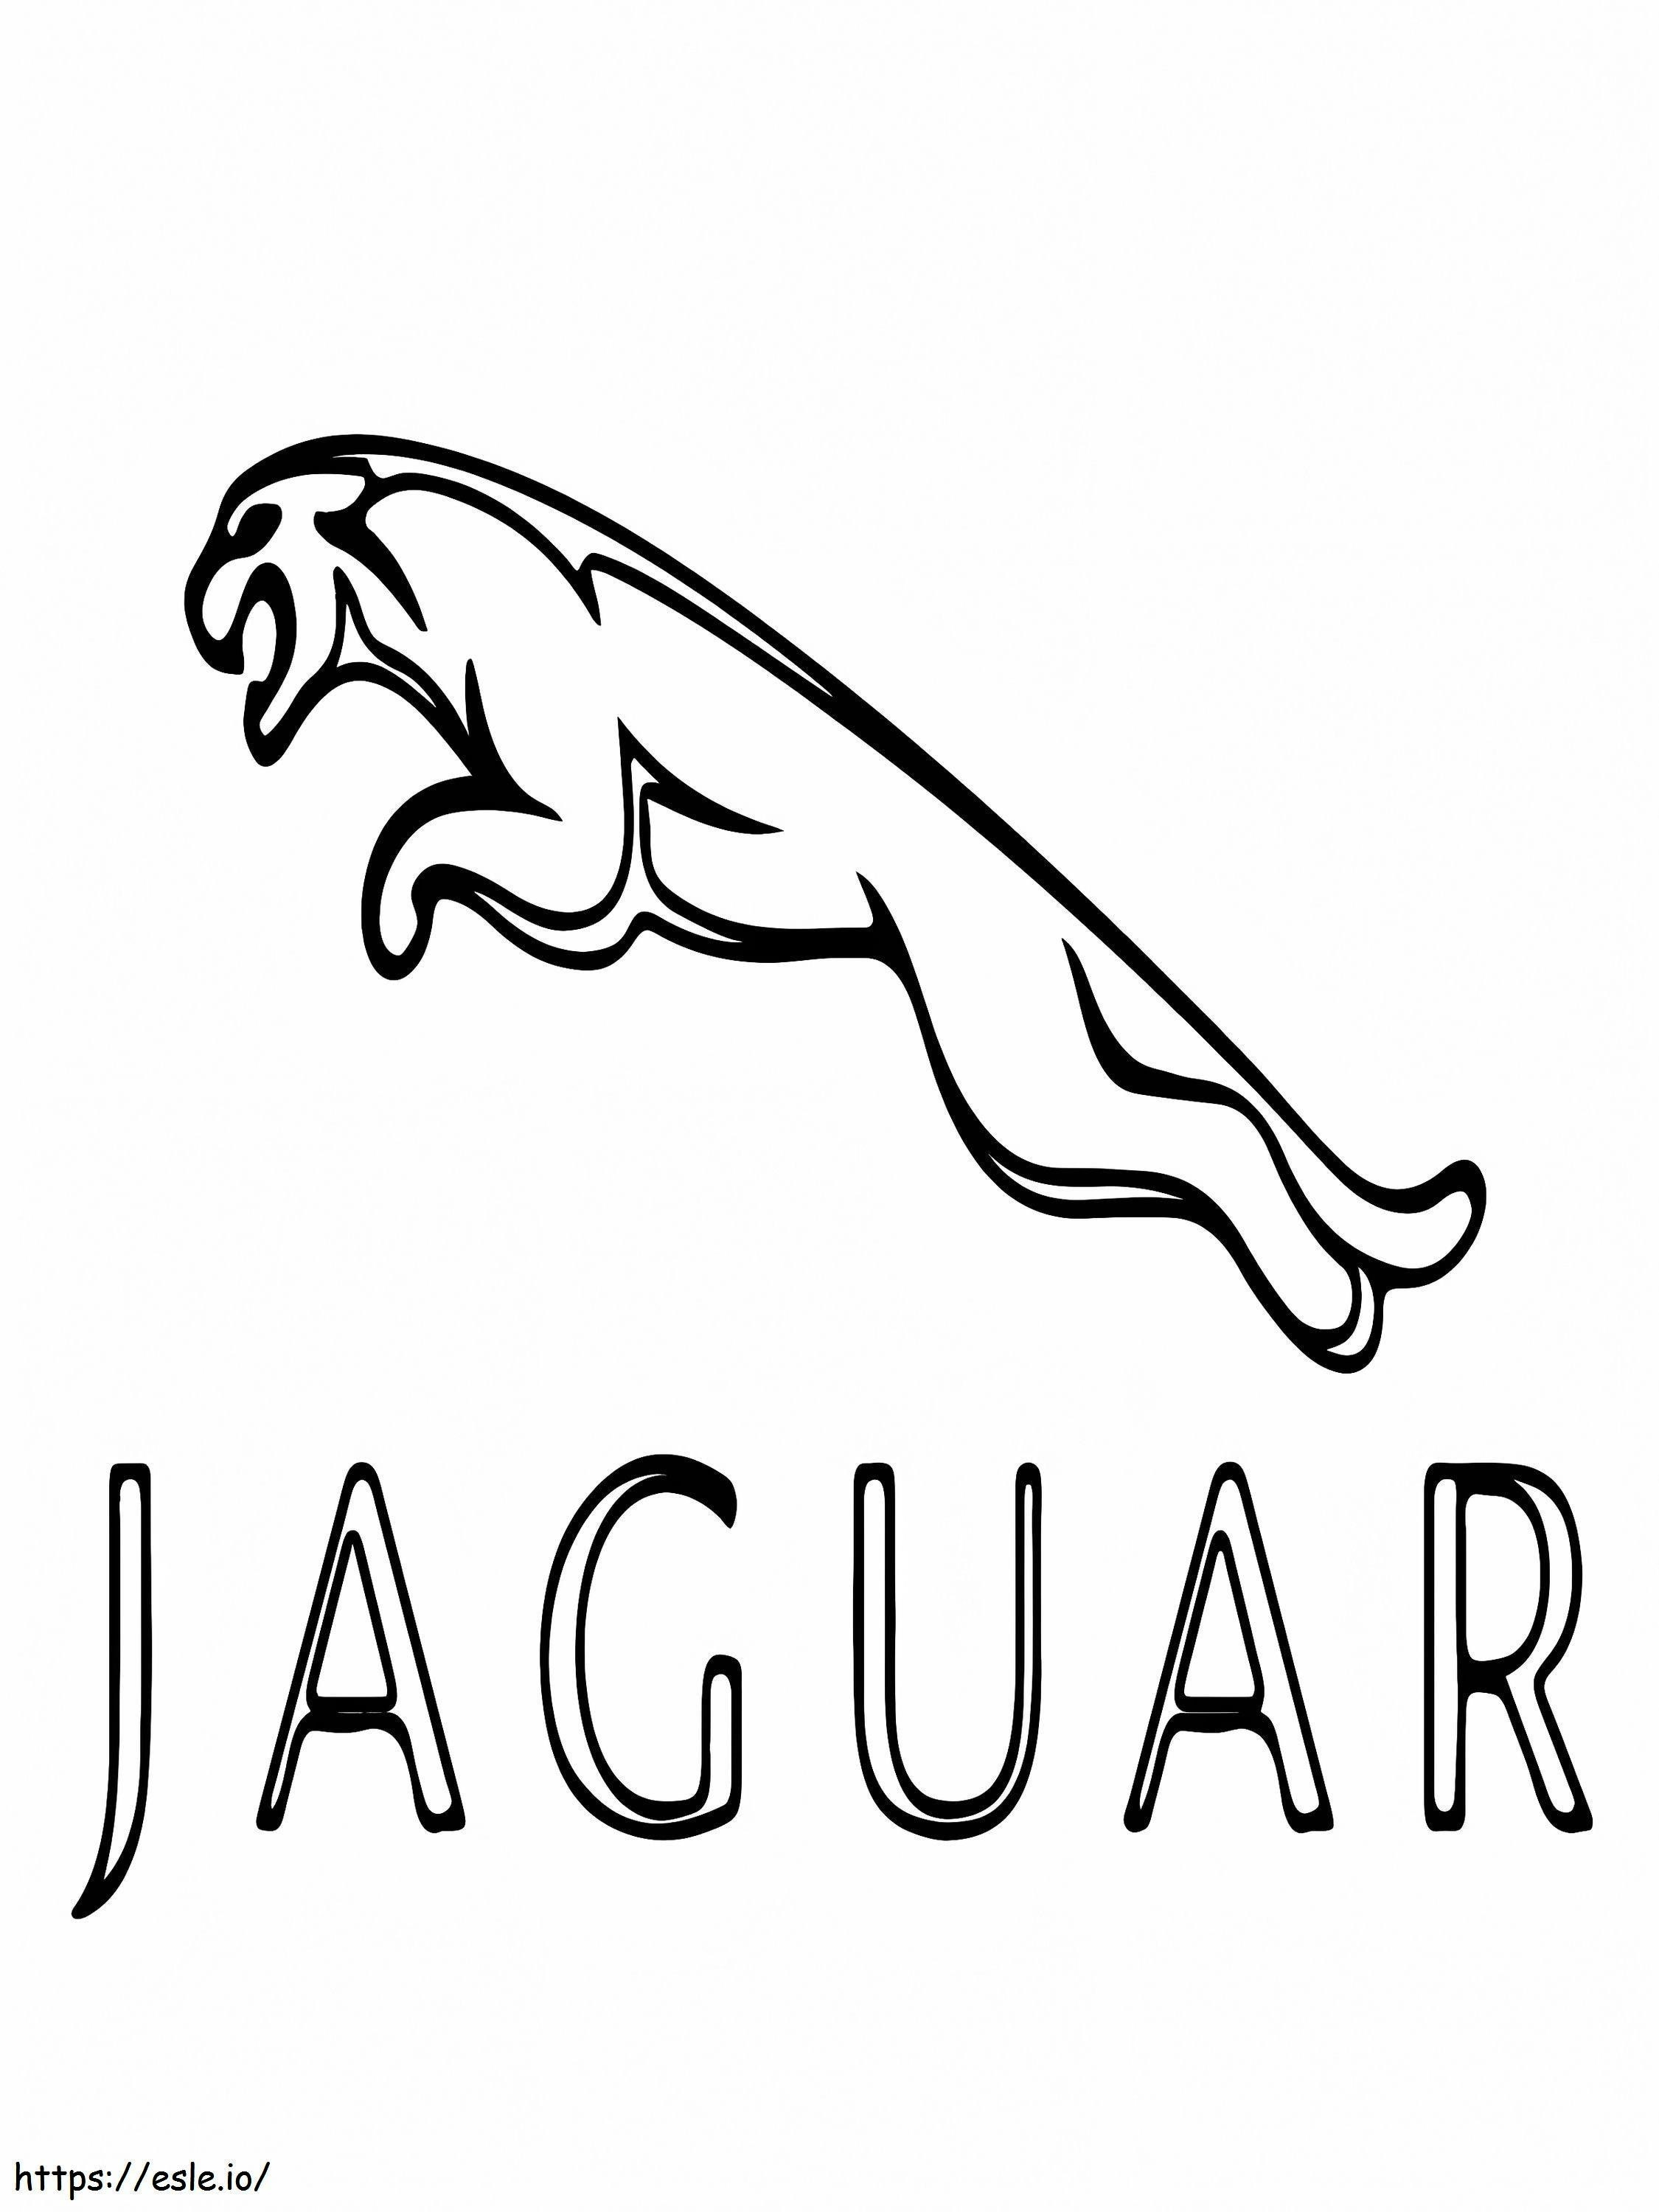 Logo dell'auto Jaguar da colorare